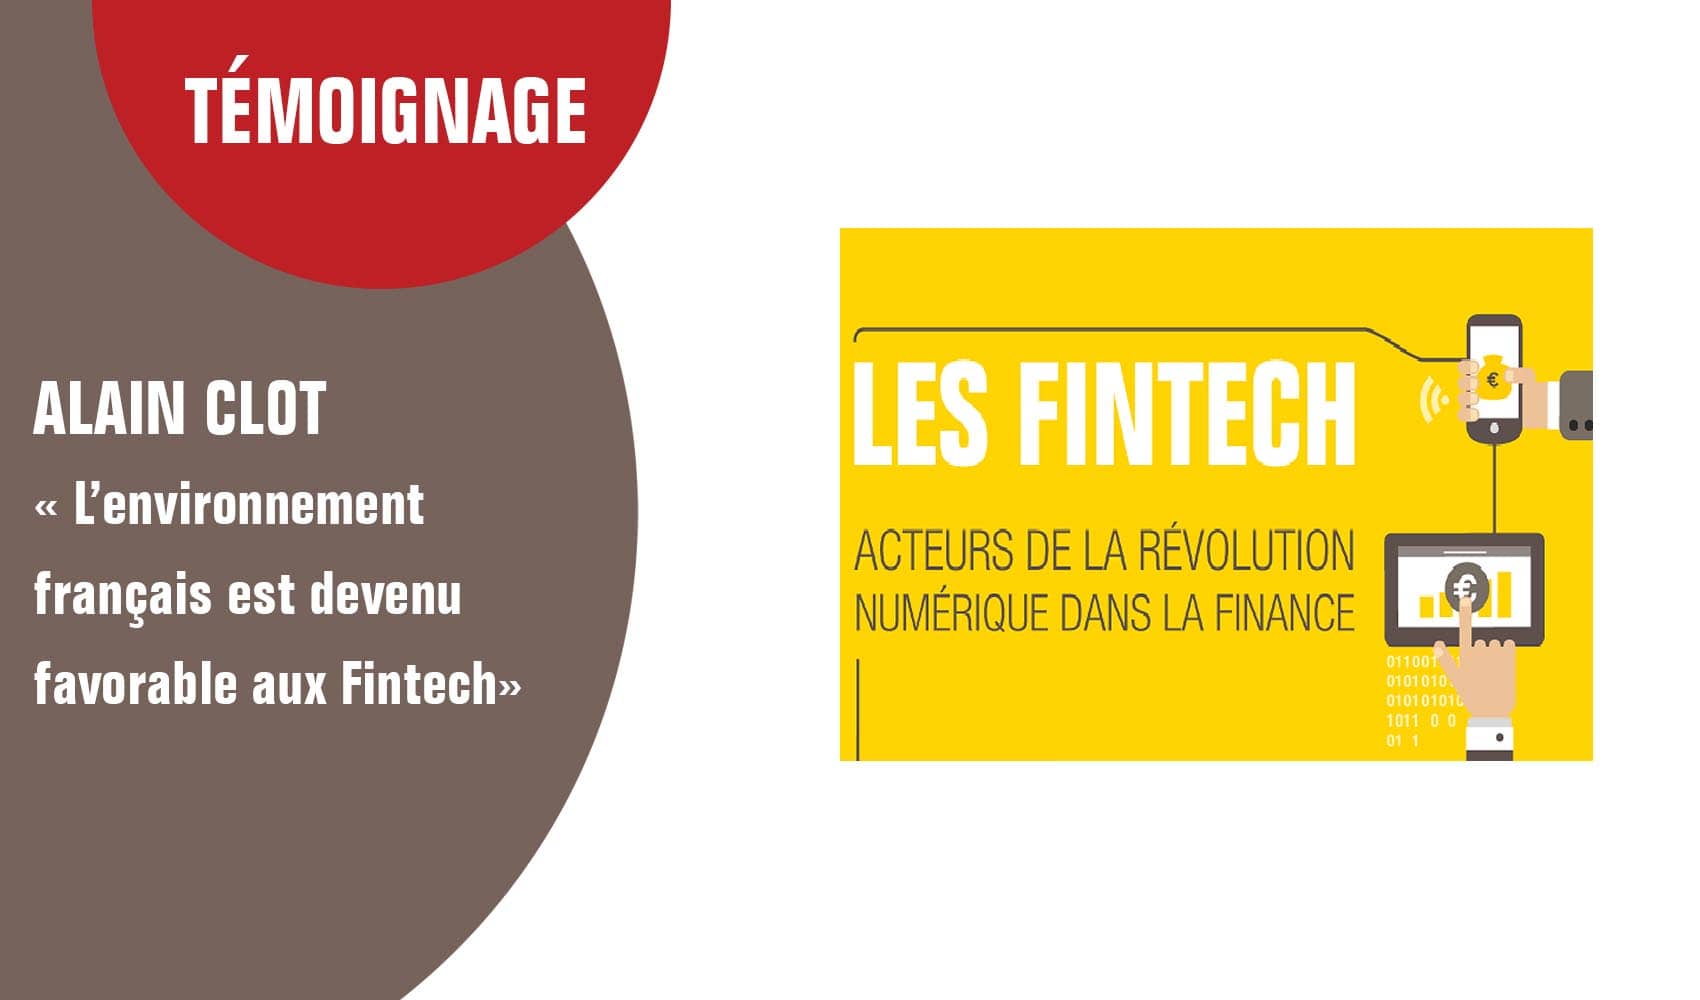 Alain Clot “’L’environnement français est devenu favorable aux Fintech”